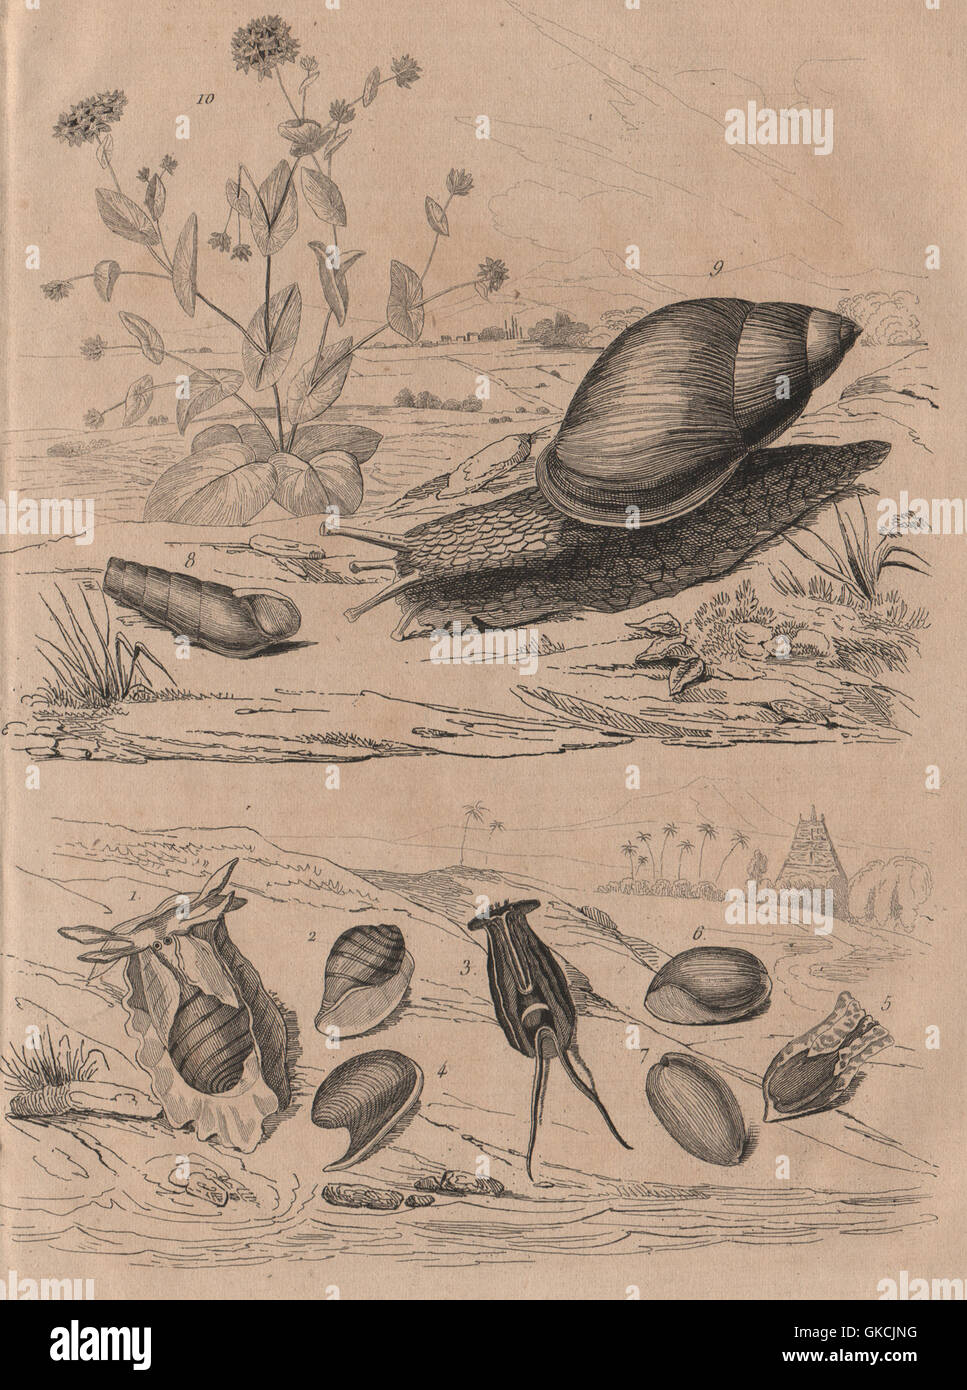 Bulle molluscs. Rumina decollata (decollate snail). Bupleurum, old print 1834 Stock Photo